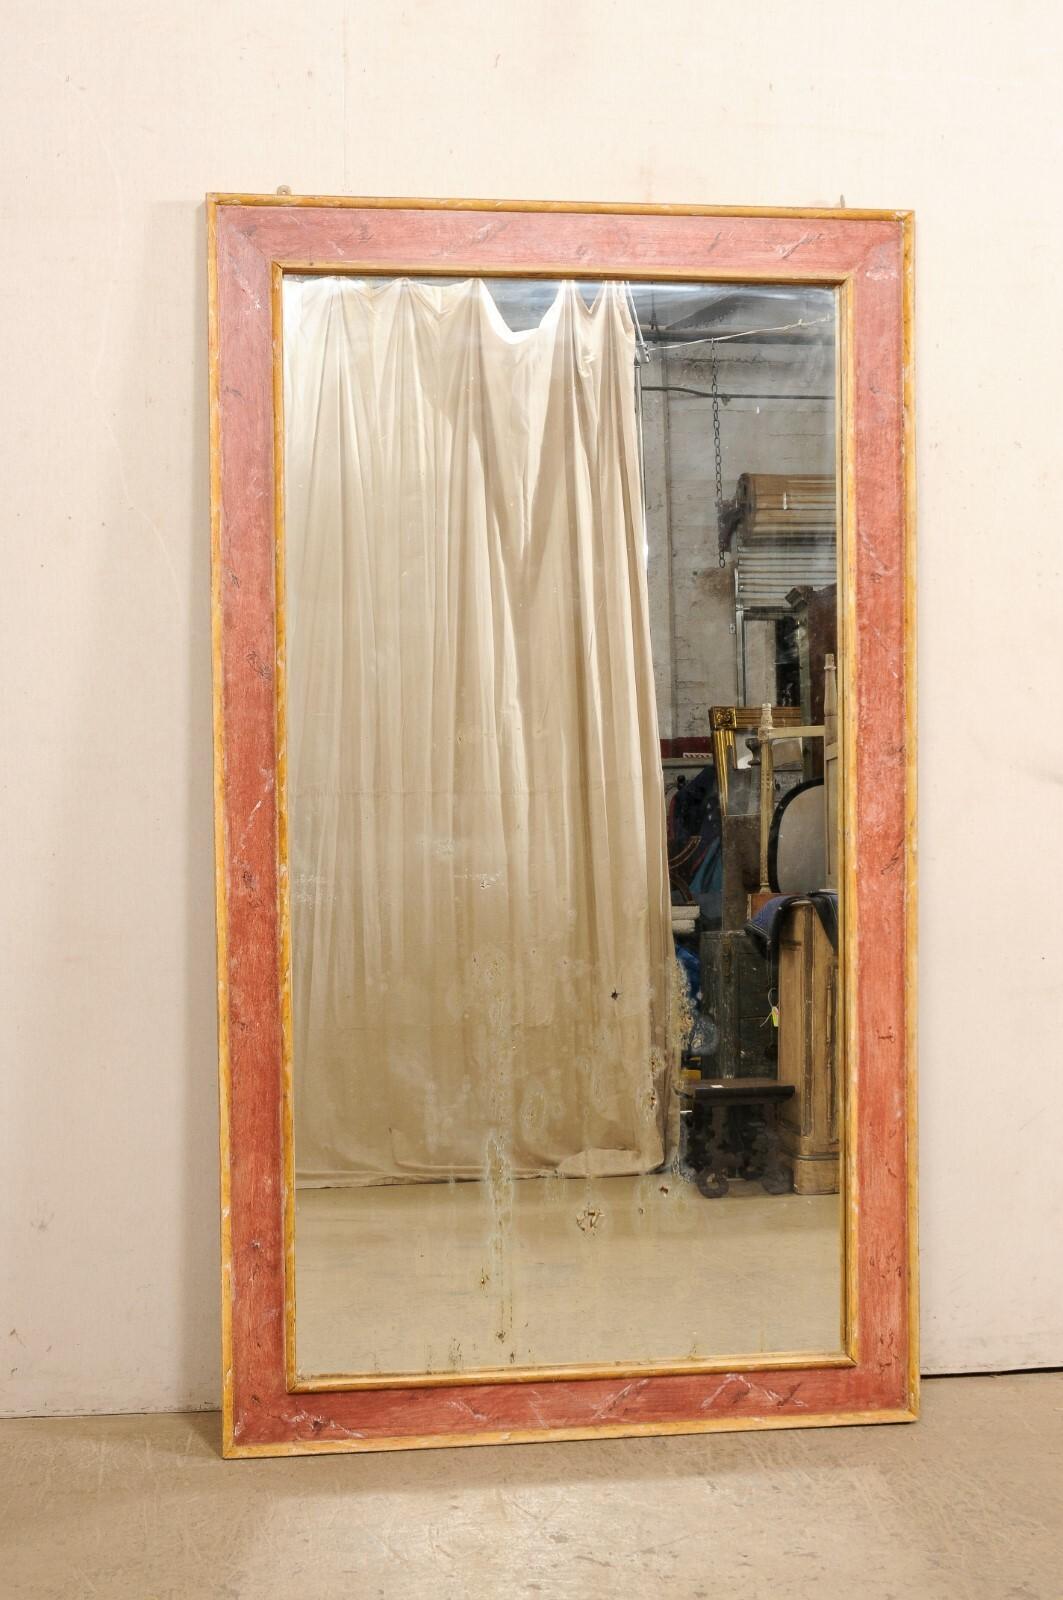 Miroir italien de grande taille, avec encadrement en bois peint, du 19e siècle. Ce grand miroir ancien d'Italie est de forme rectangulaire, avec un entourage en bois aux lignes épurées, encadrant le verre au centre. La finition est une nuance de